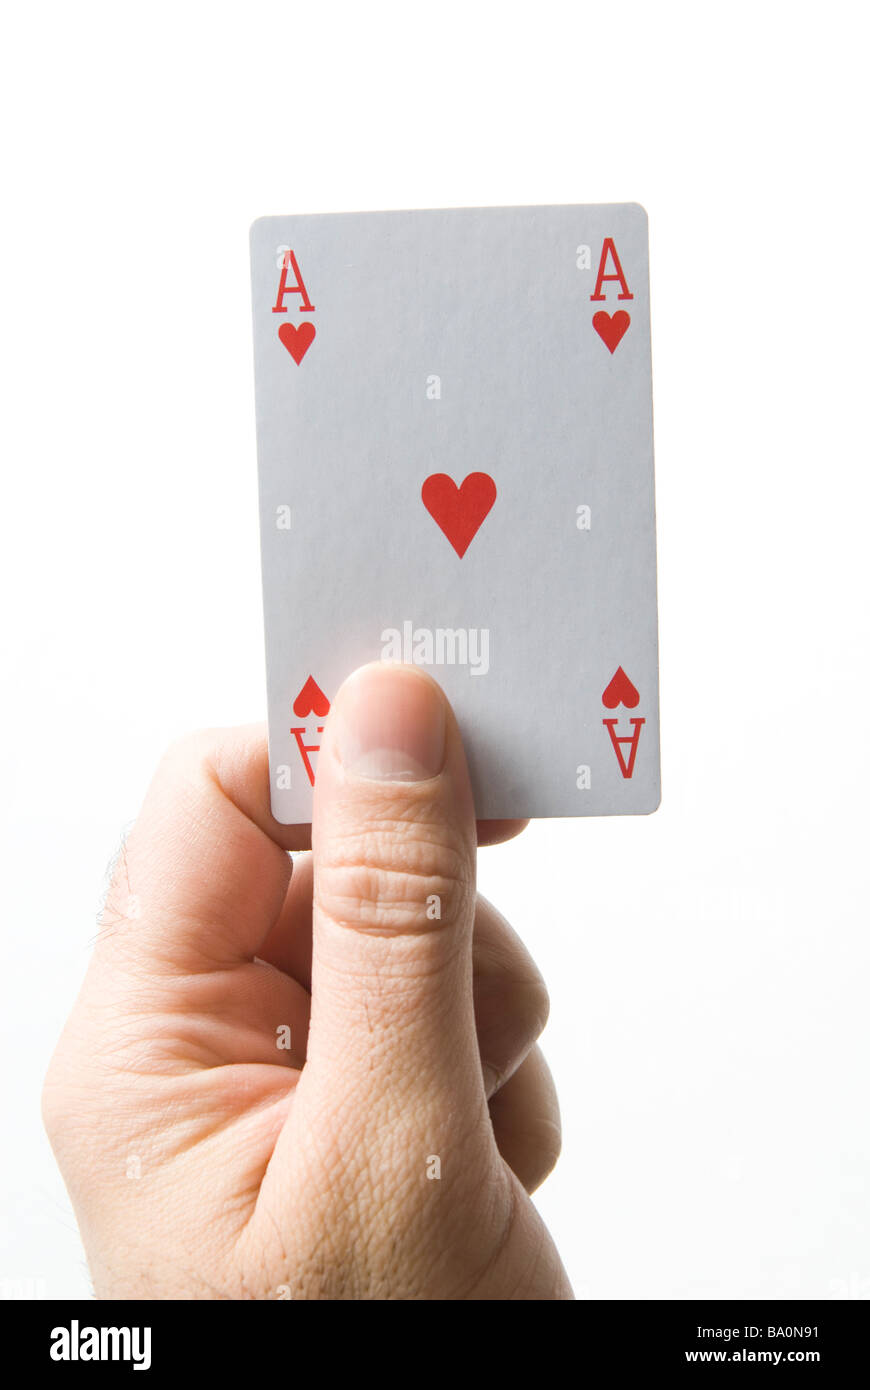 Mannes Hand mit fünf Karten spielen (ein paar schlechte), isoliert auf  weißem Hintergrund Stockfotografie - Alamy